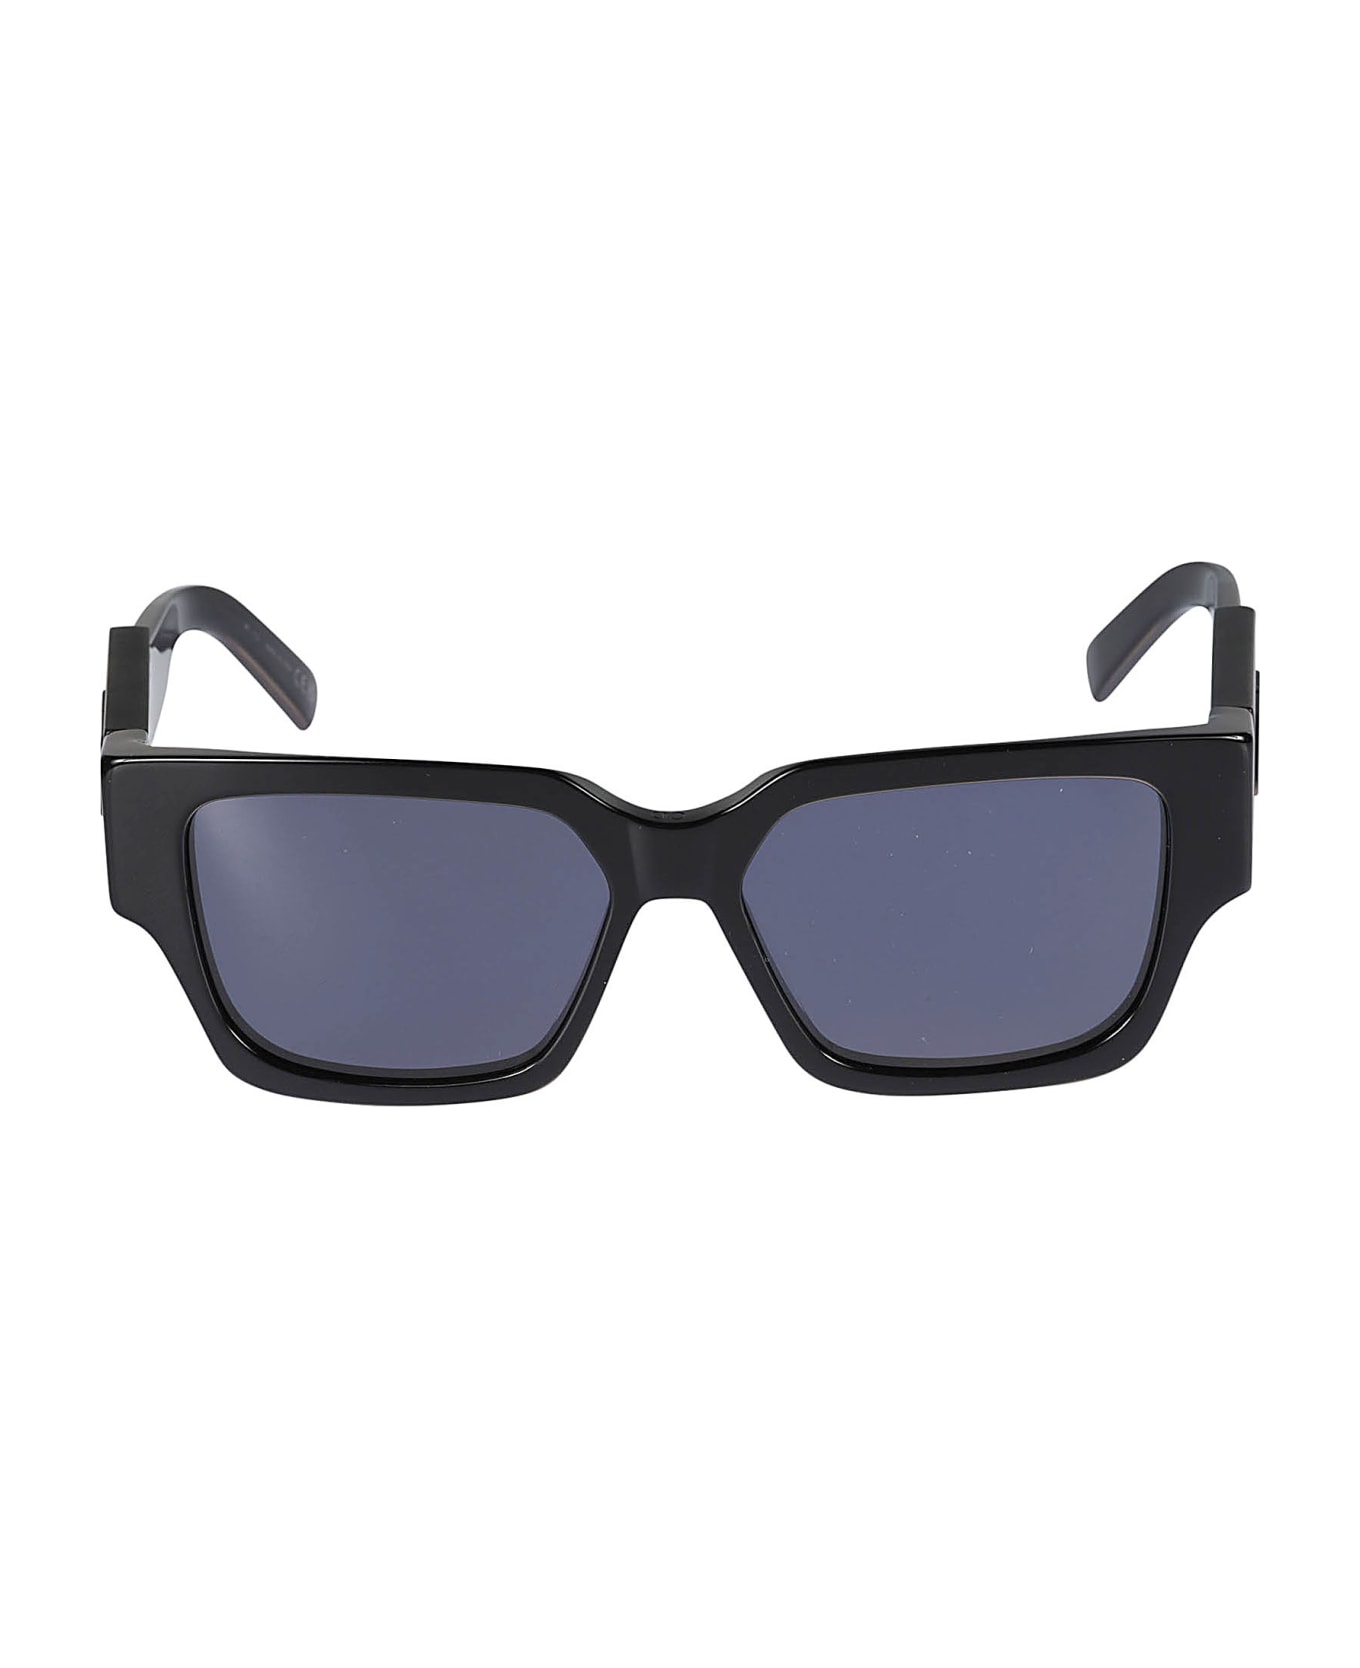 Dior Eyewear Cd Sunglasses - 16a0 サングラス